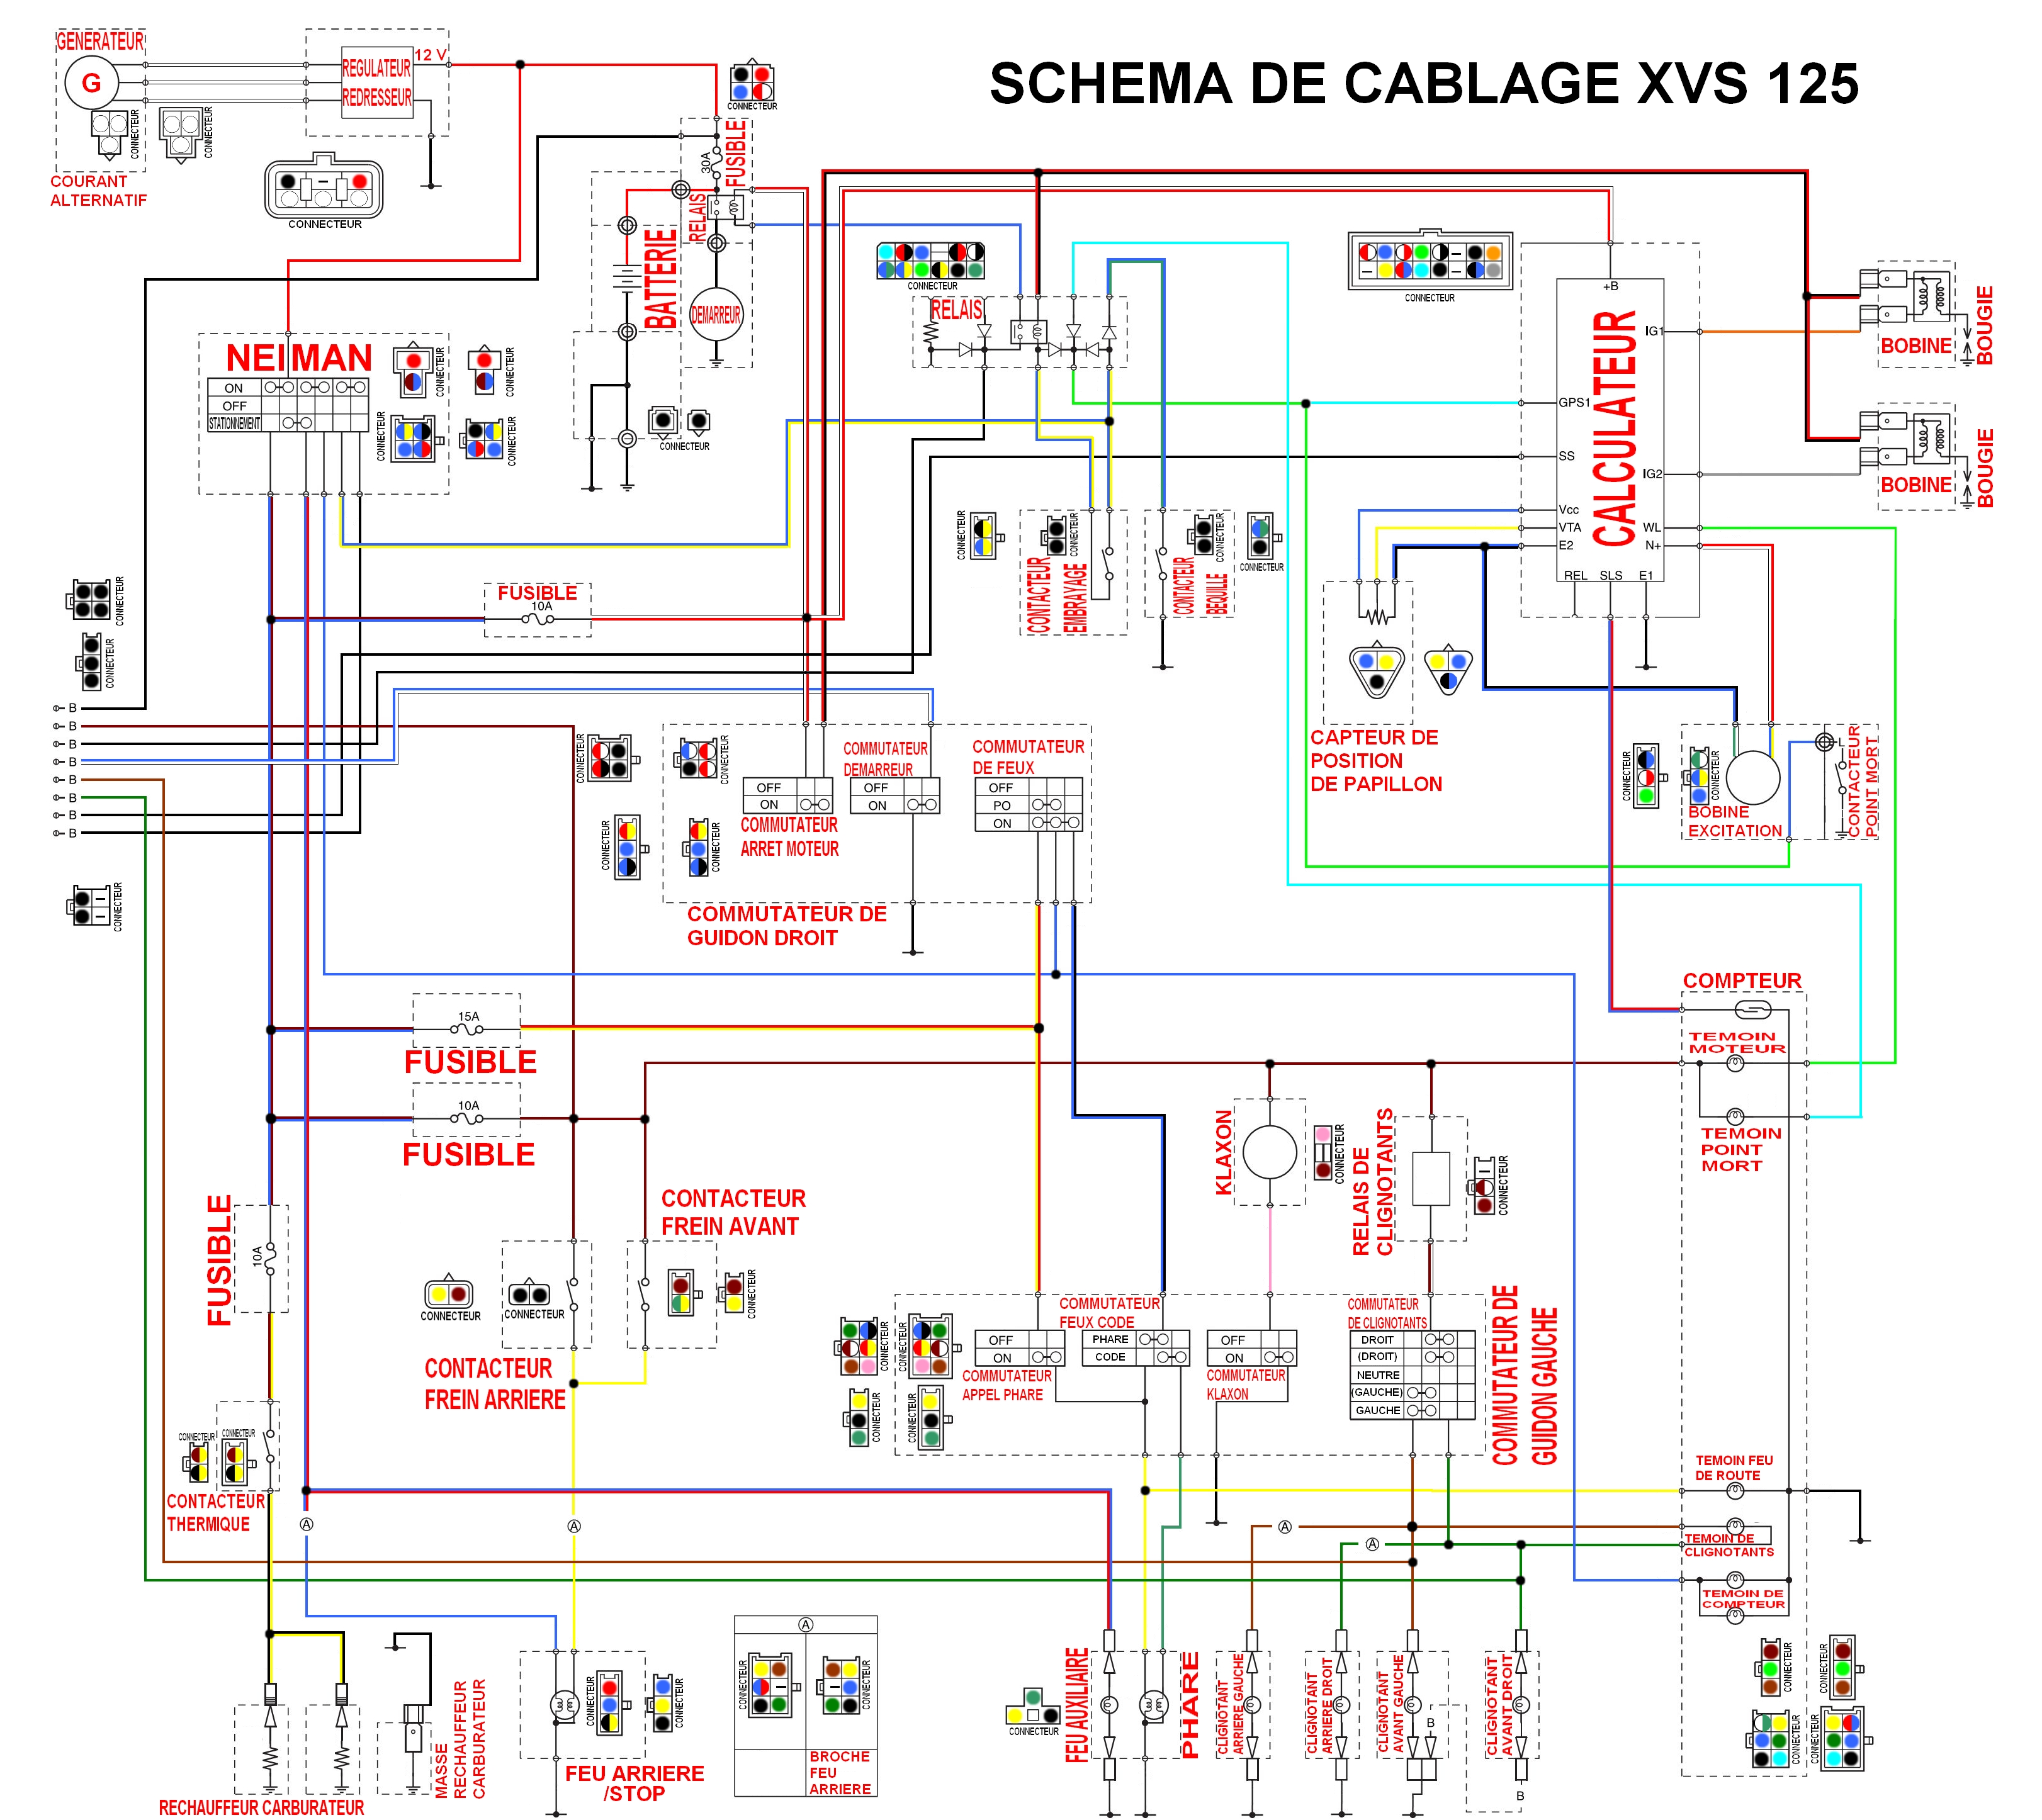 SCHEMA DE CABLAGE XVS 125